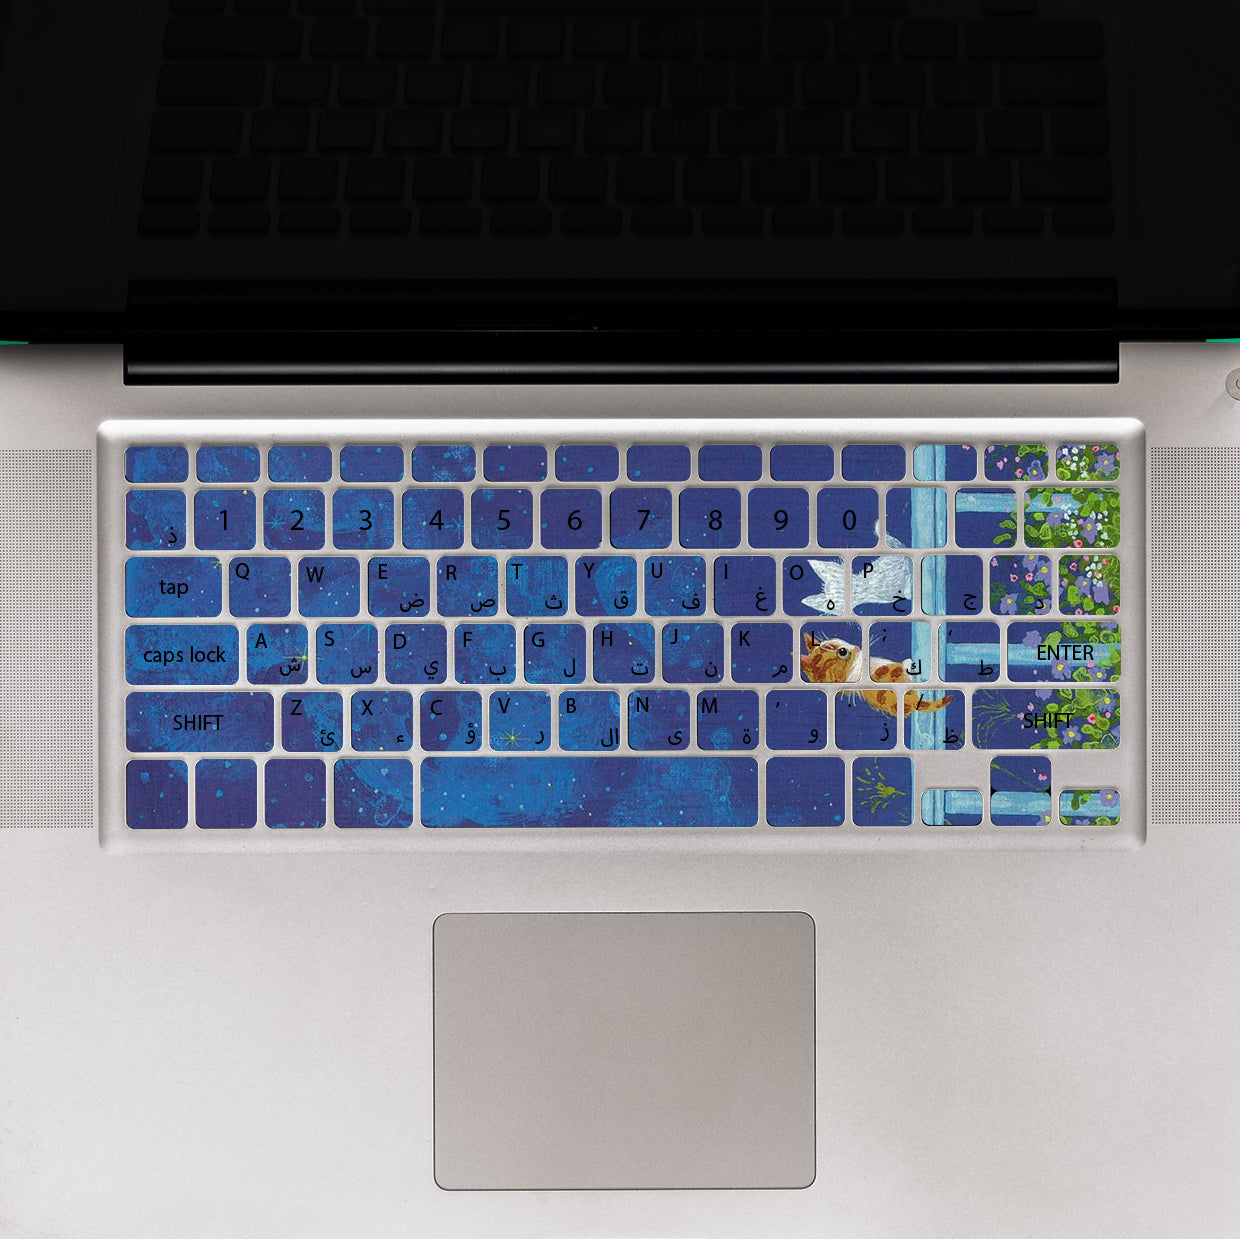 Cat Blue Laptop Keyboard Sticker